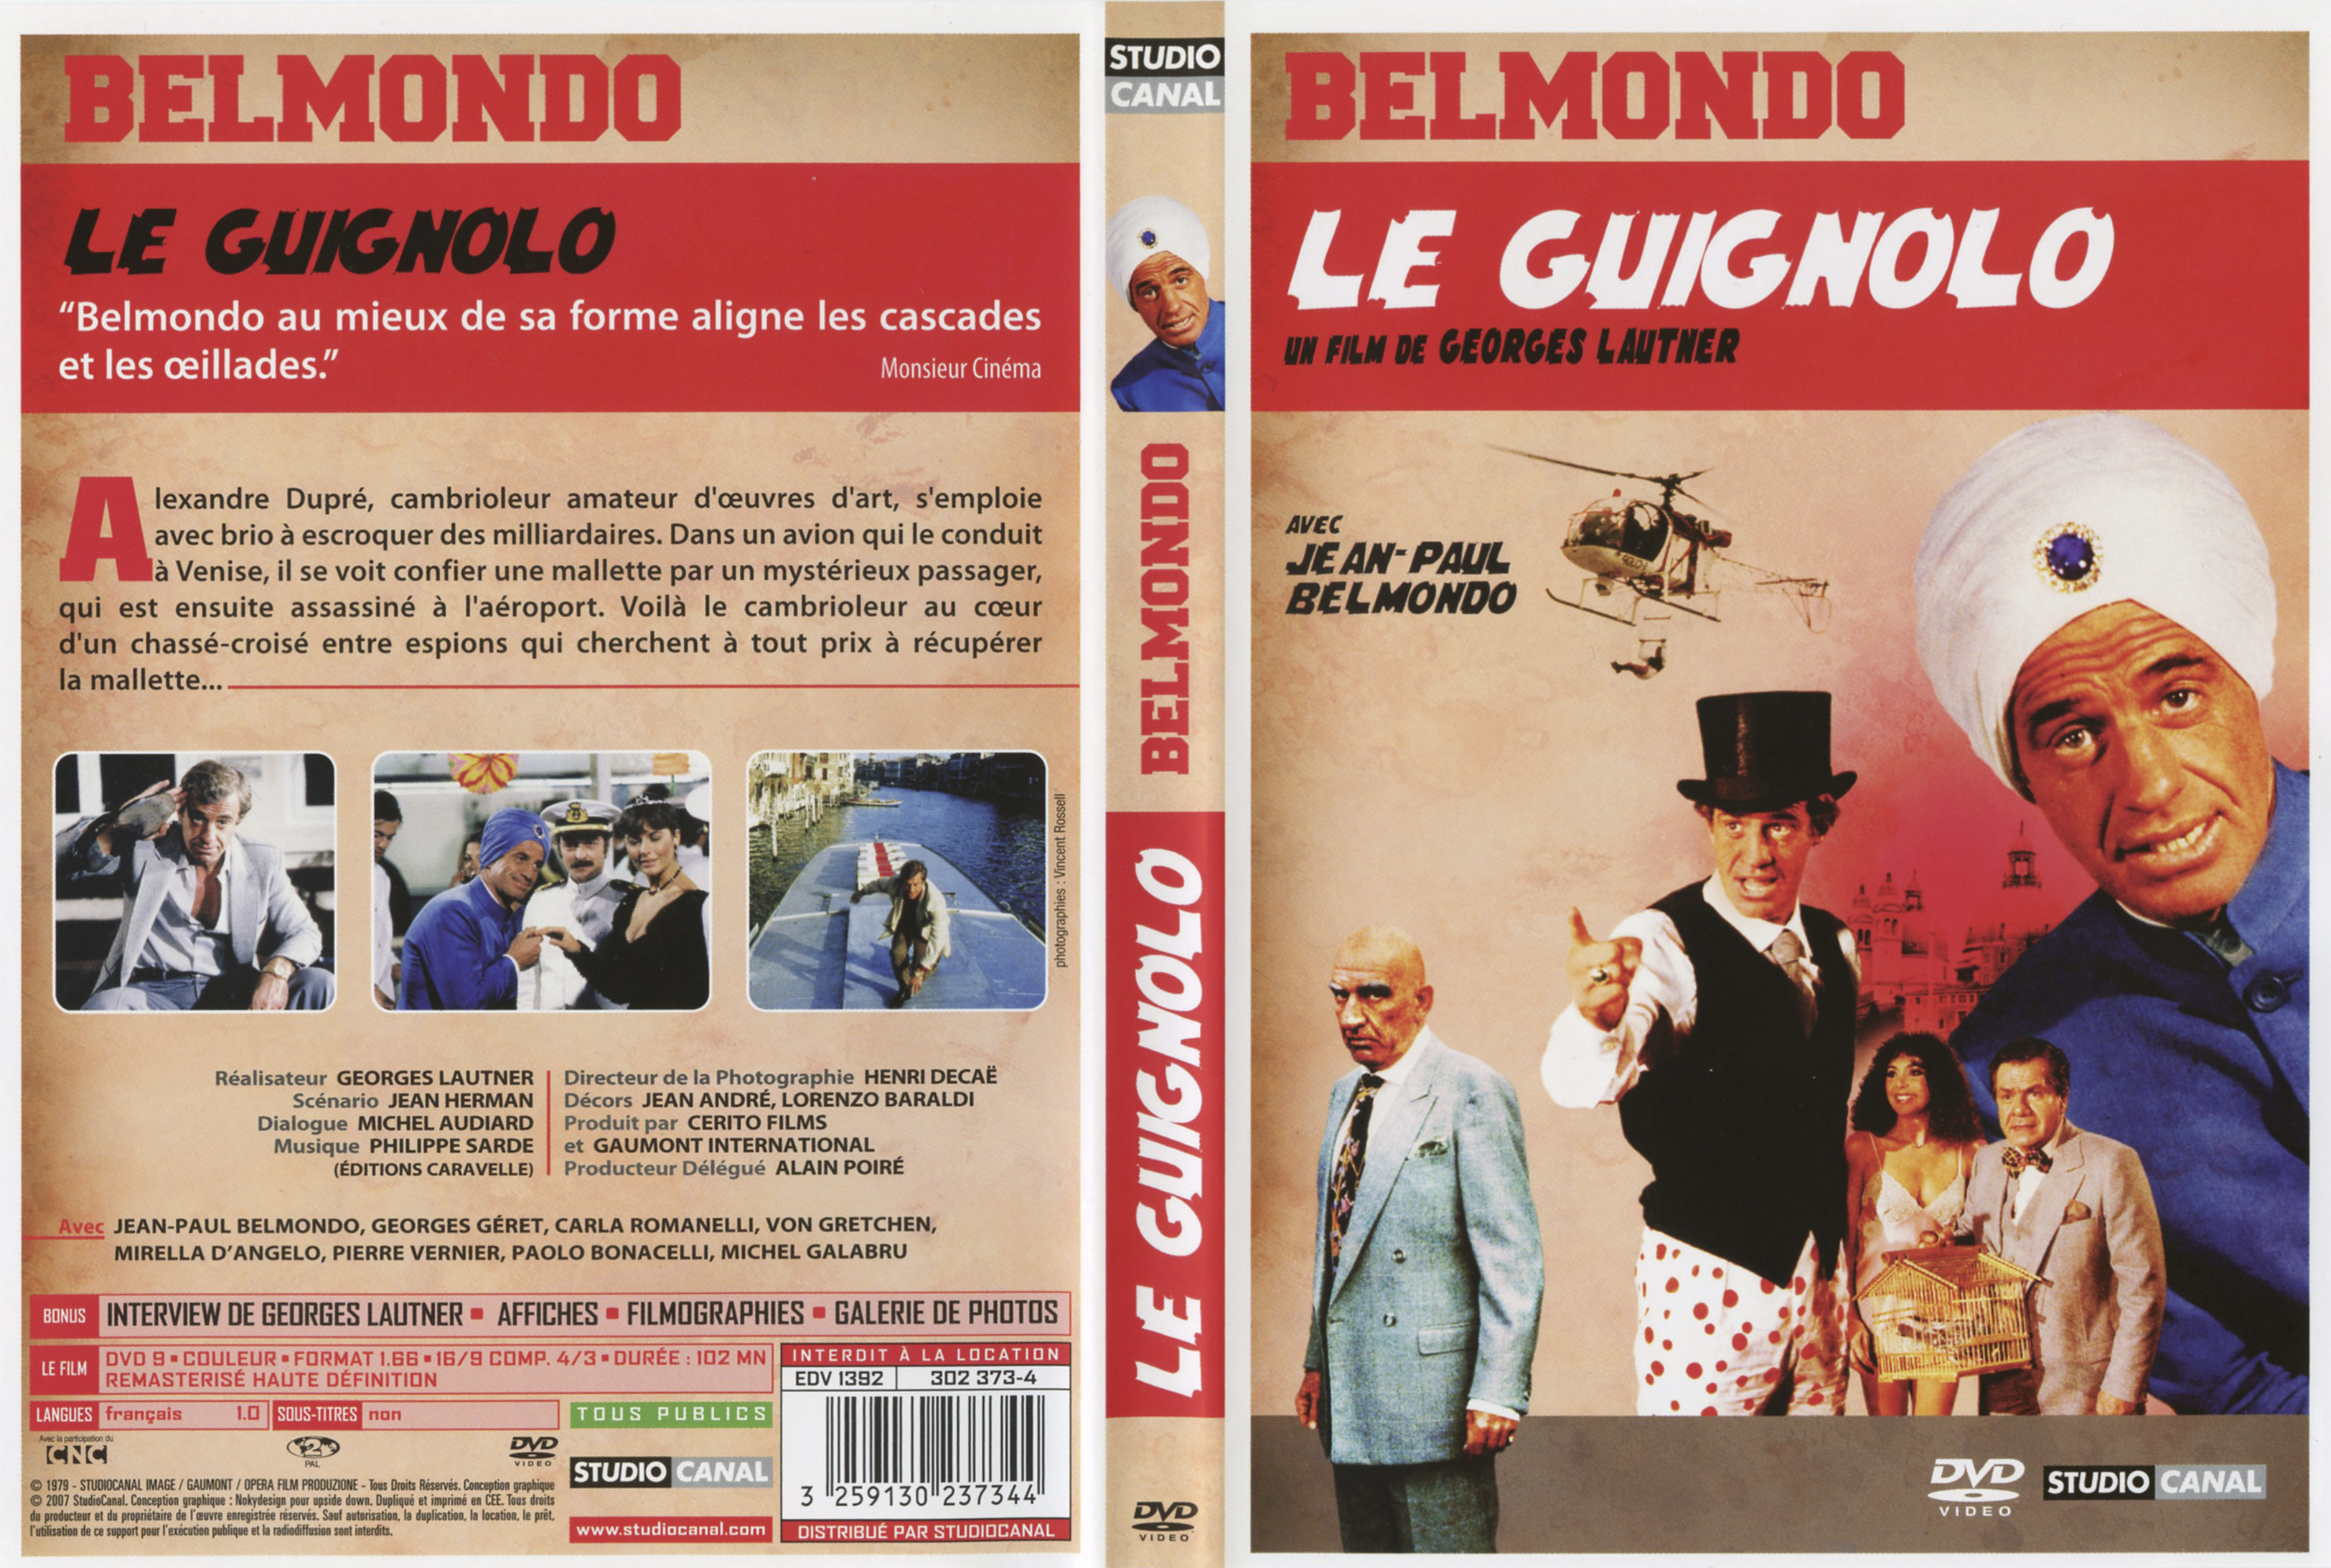 Jaquette DVD Le guignolo v3